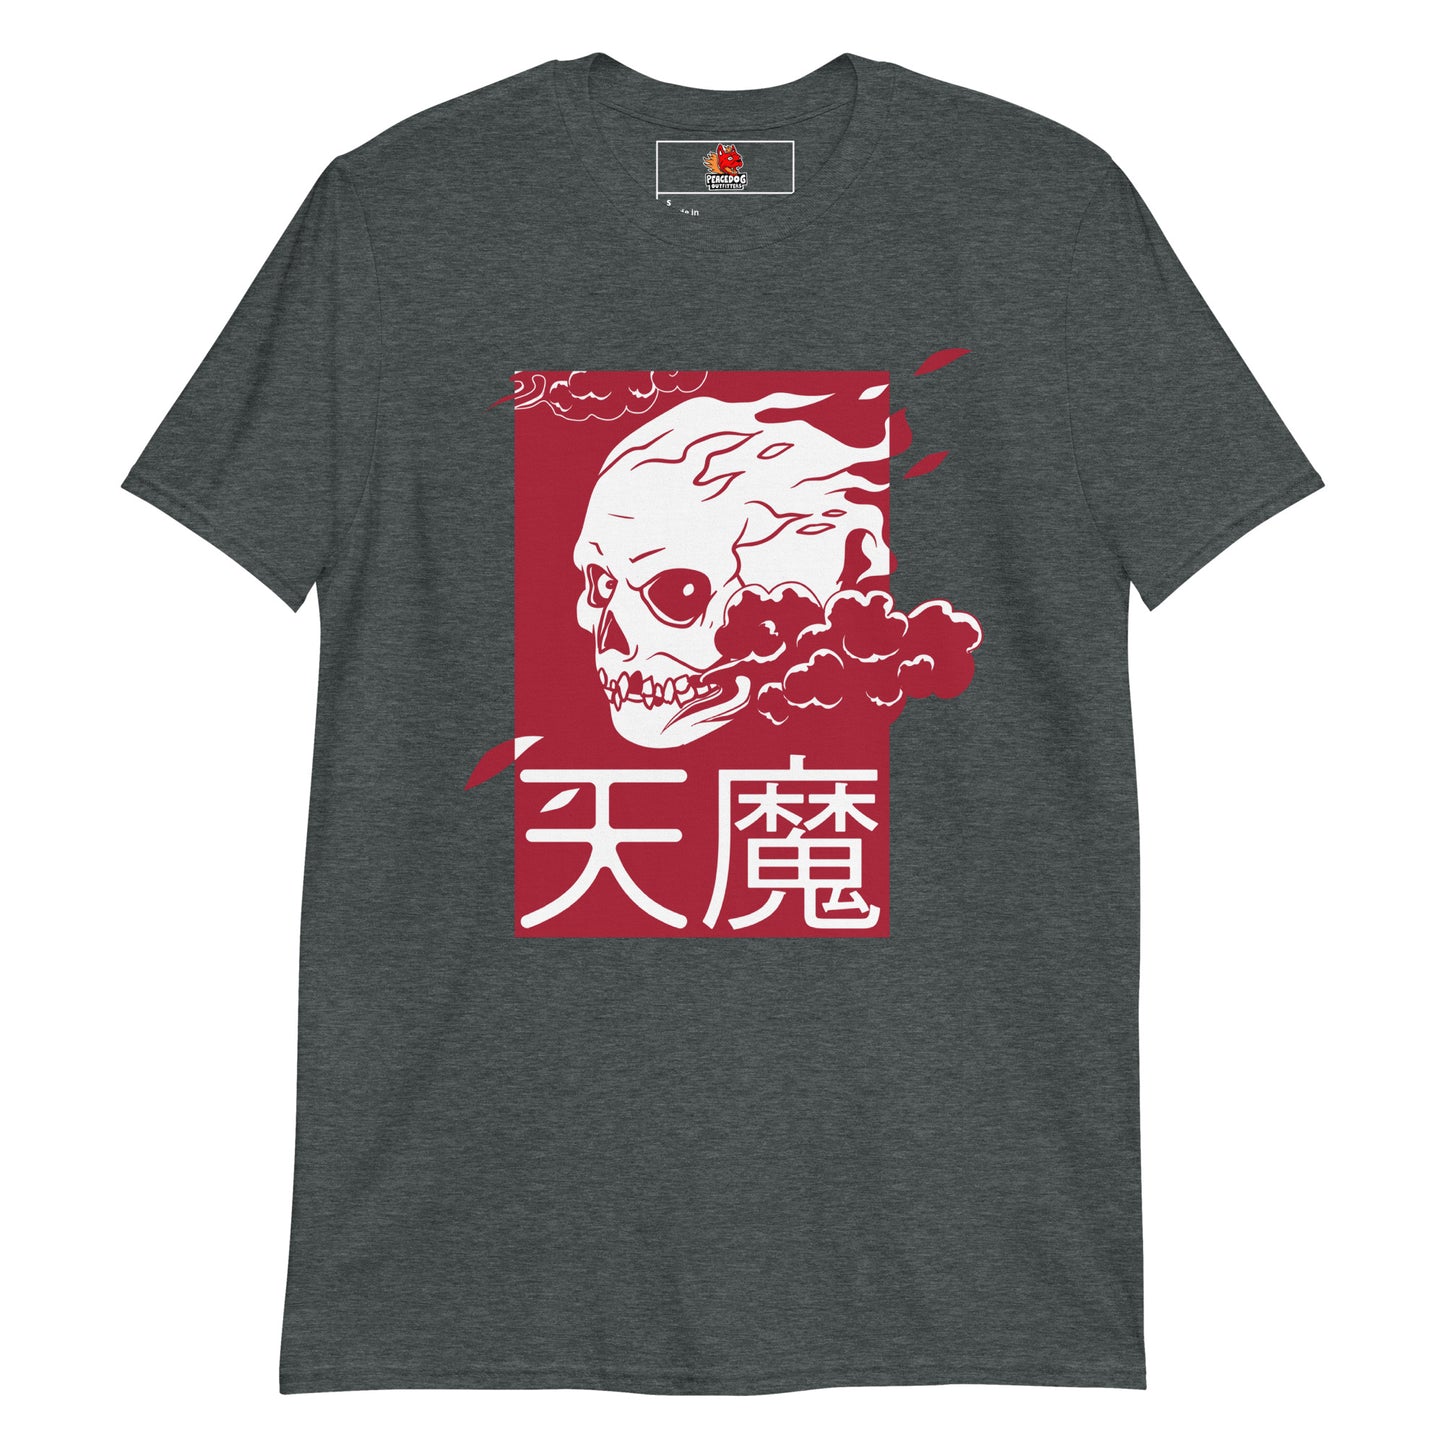 Fiery Skull T-Shirt